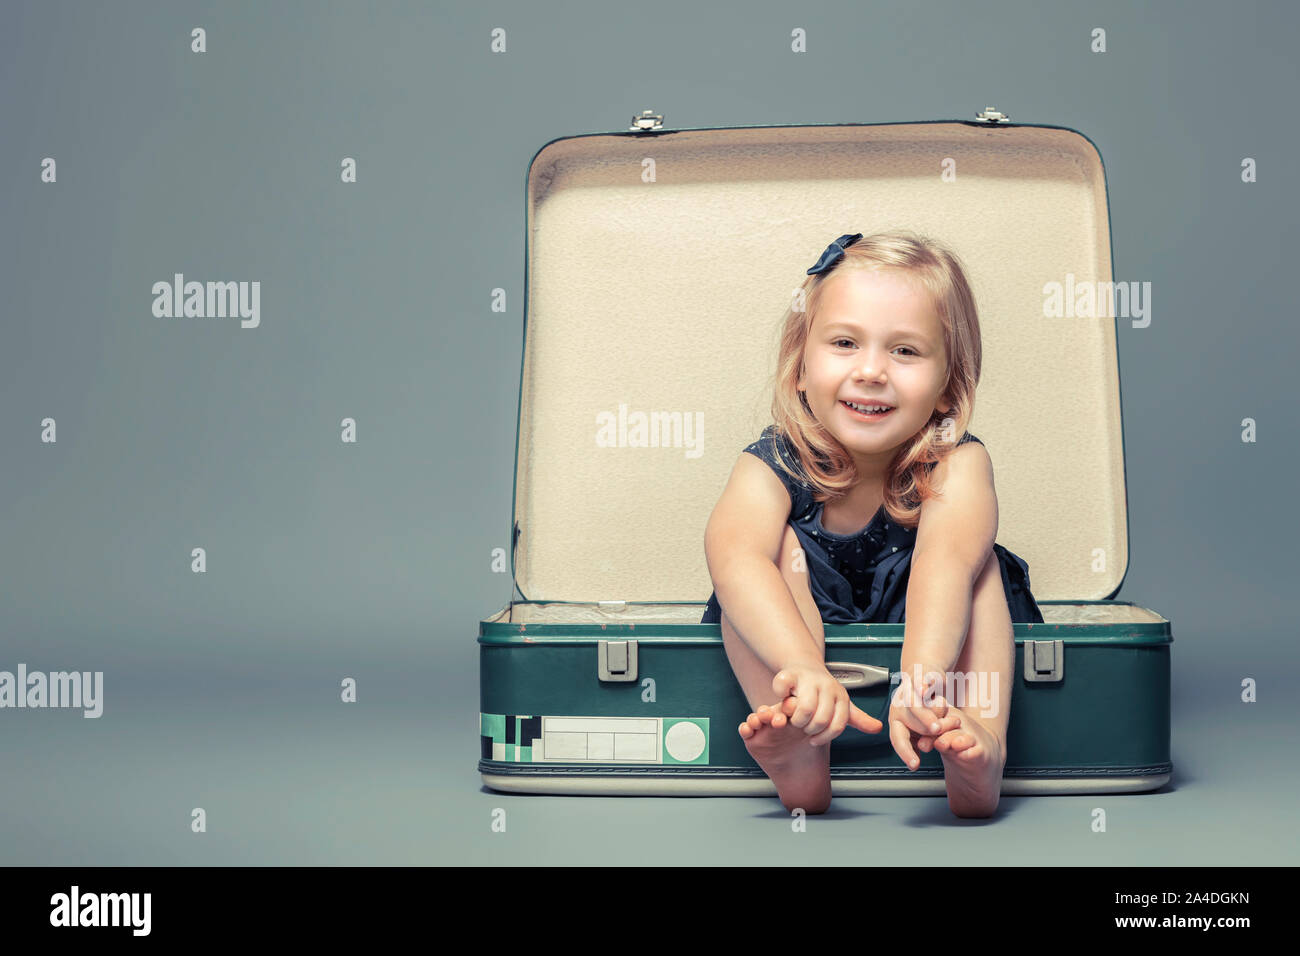 Retrato de una niña de tres años chica rubia caucásica sentado en una maleta vintage. Foto de estudio Foto de stock